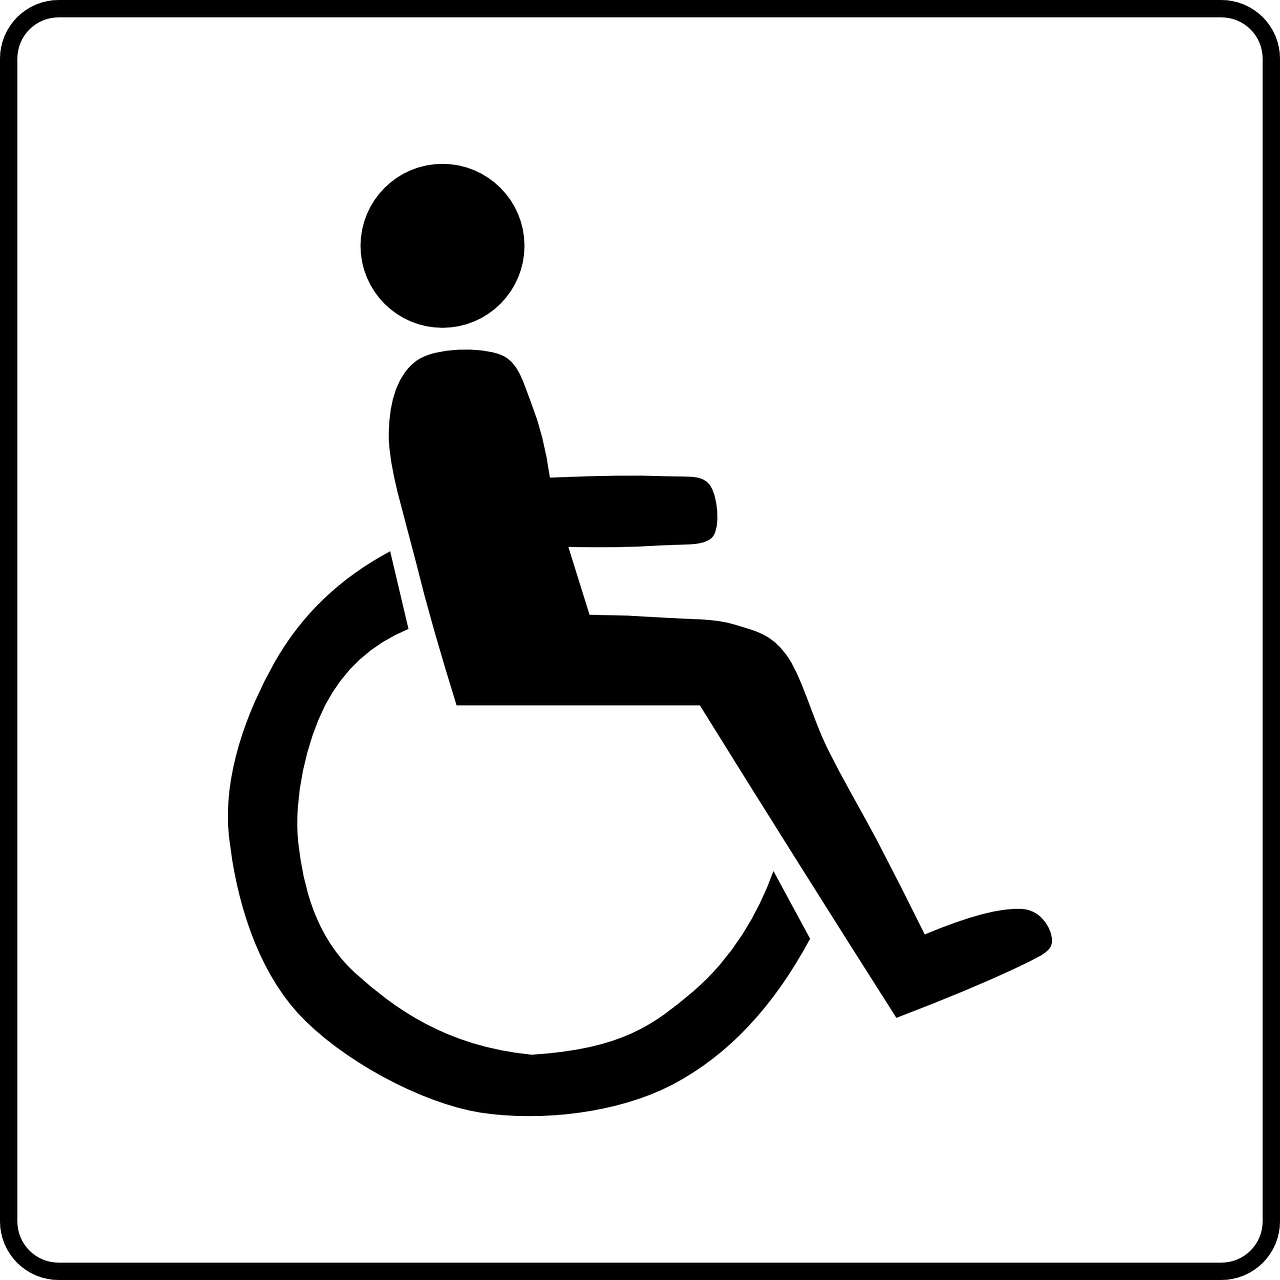 Woonvoorziening Jekerstraat ervaring instelling gehandicaptenzorg verstandelijk gehandicapten